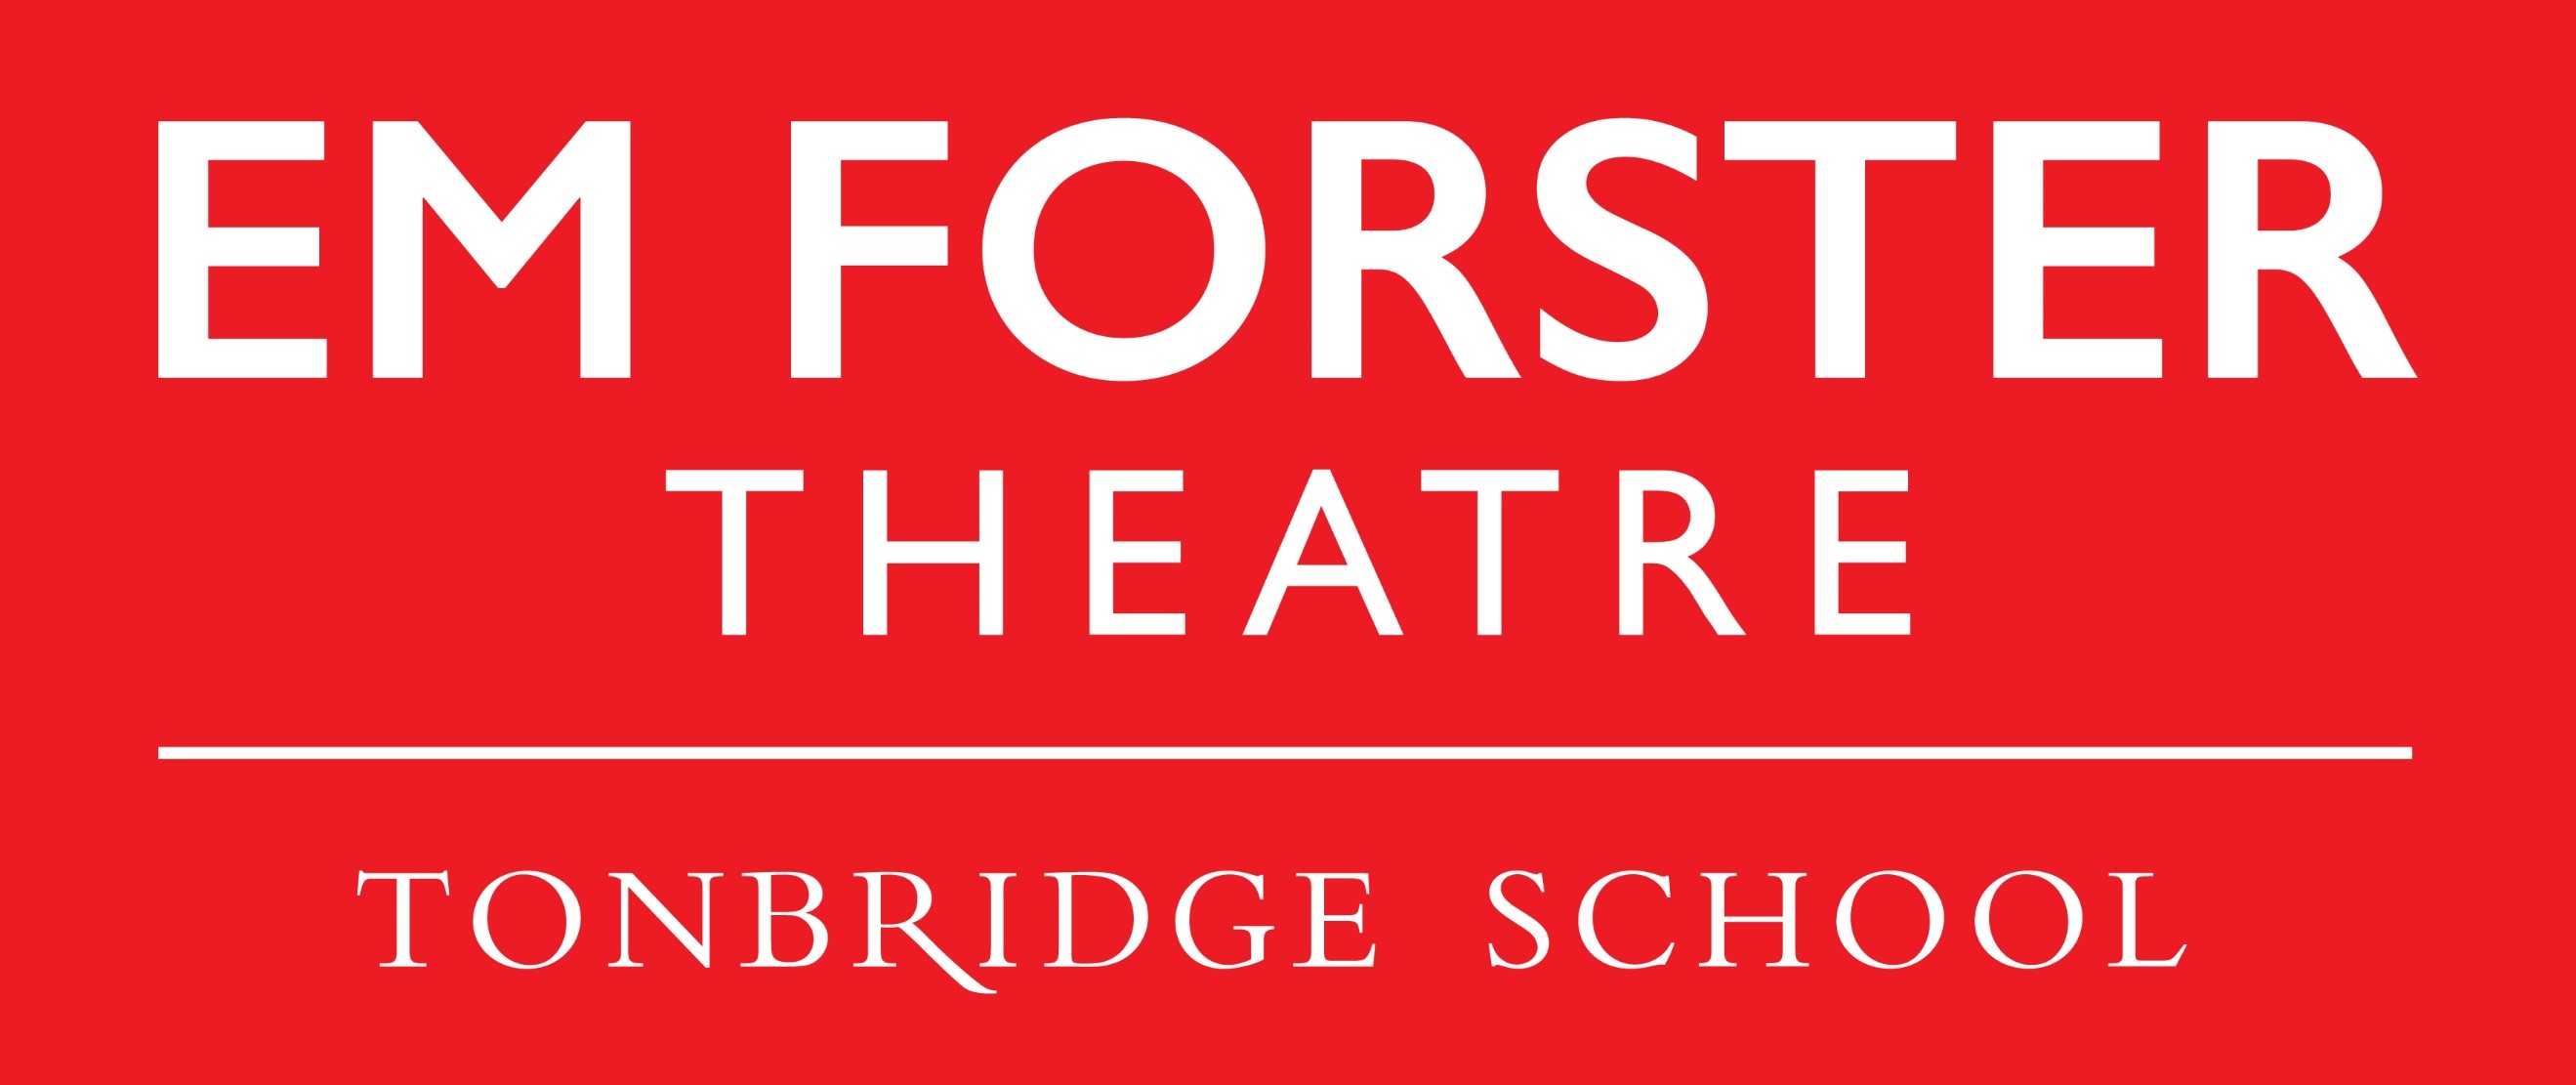 EM Forster Theatre logo